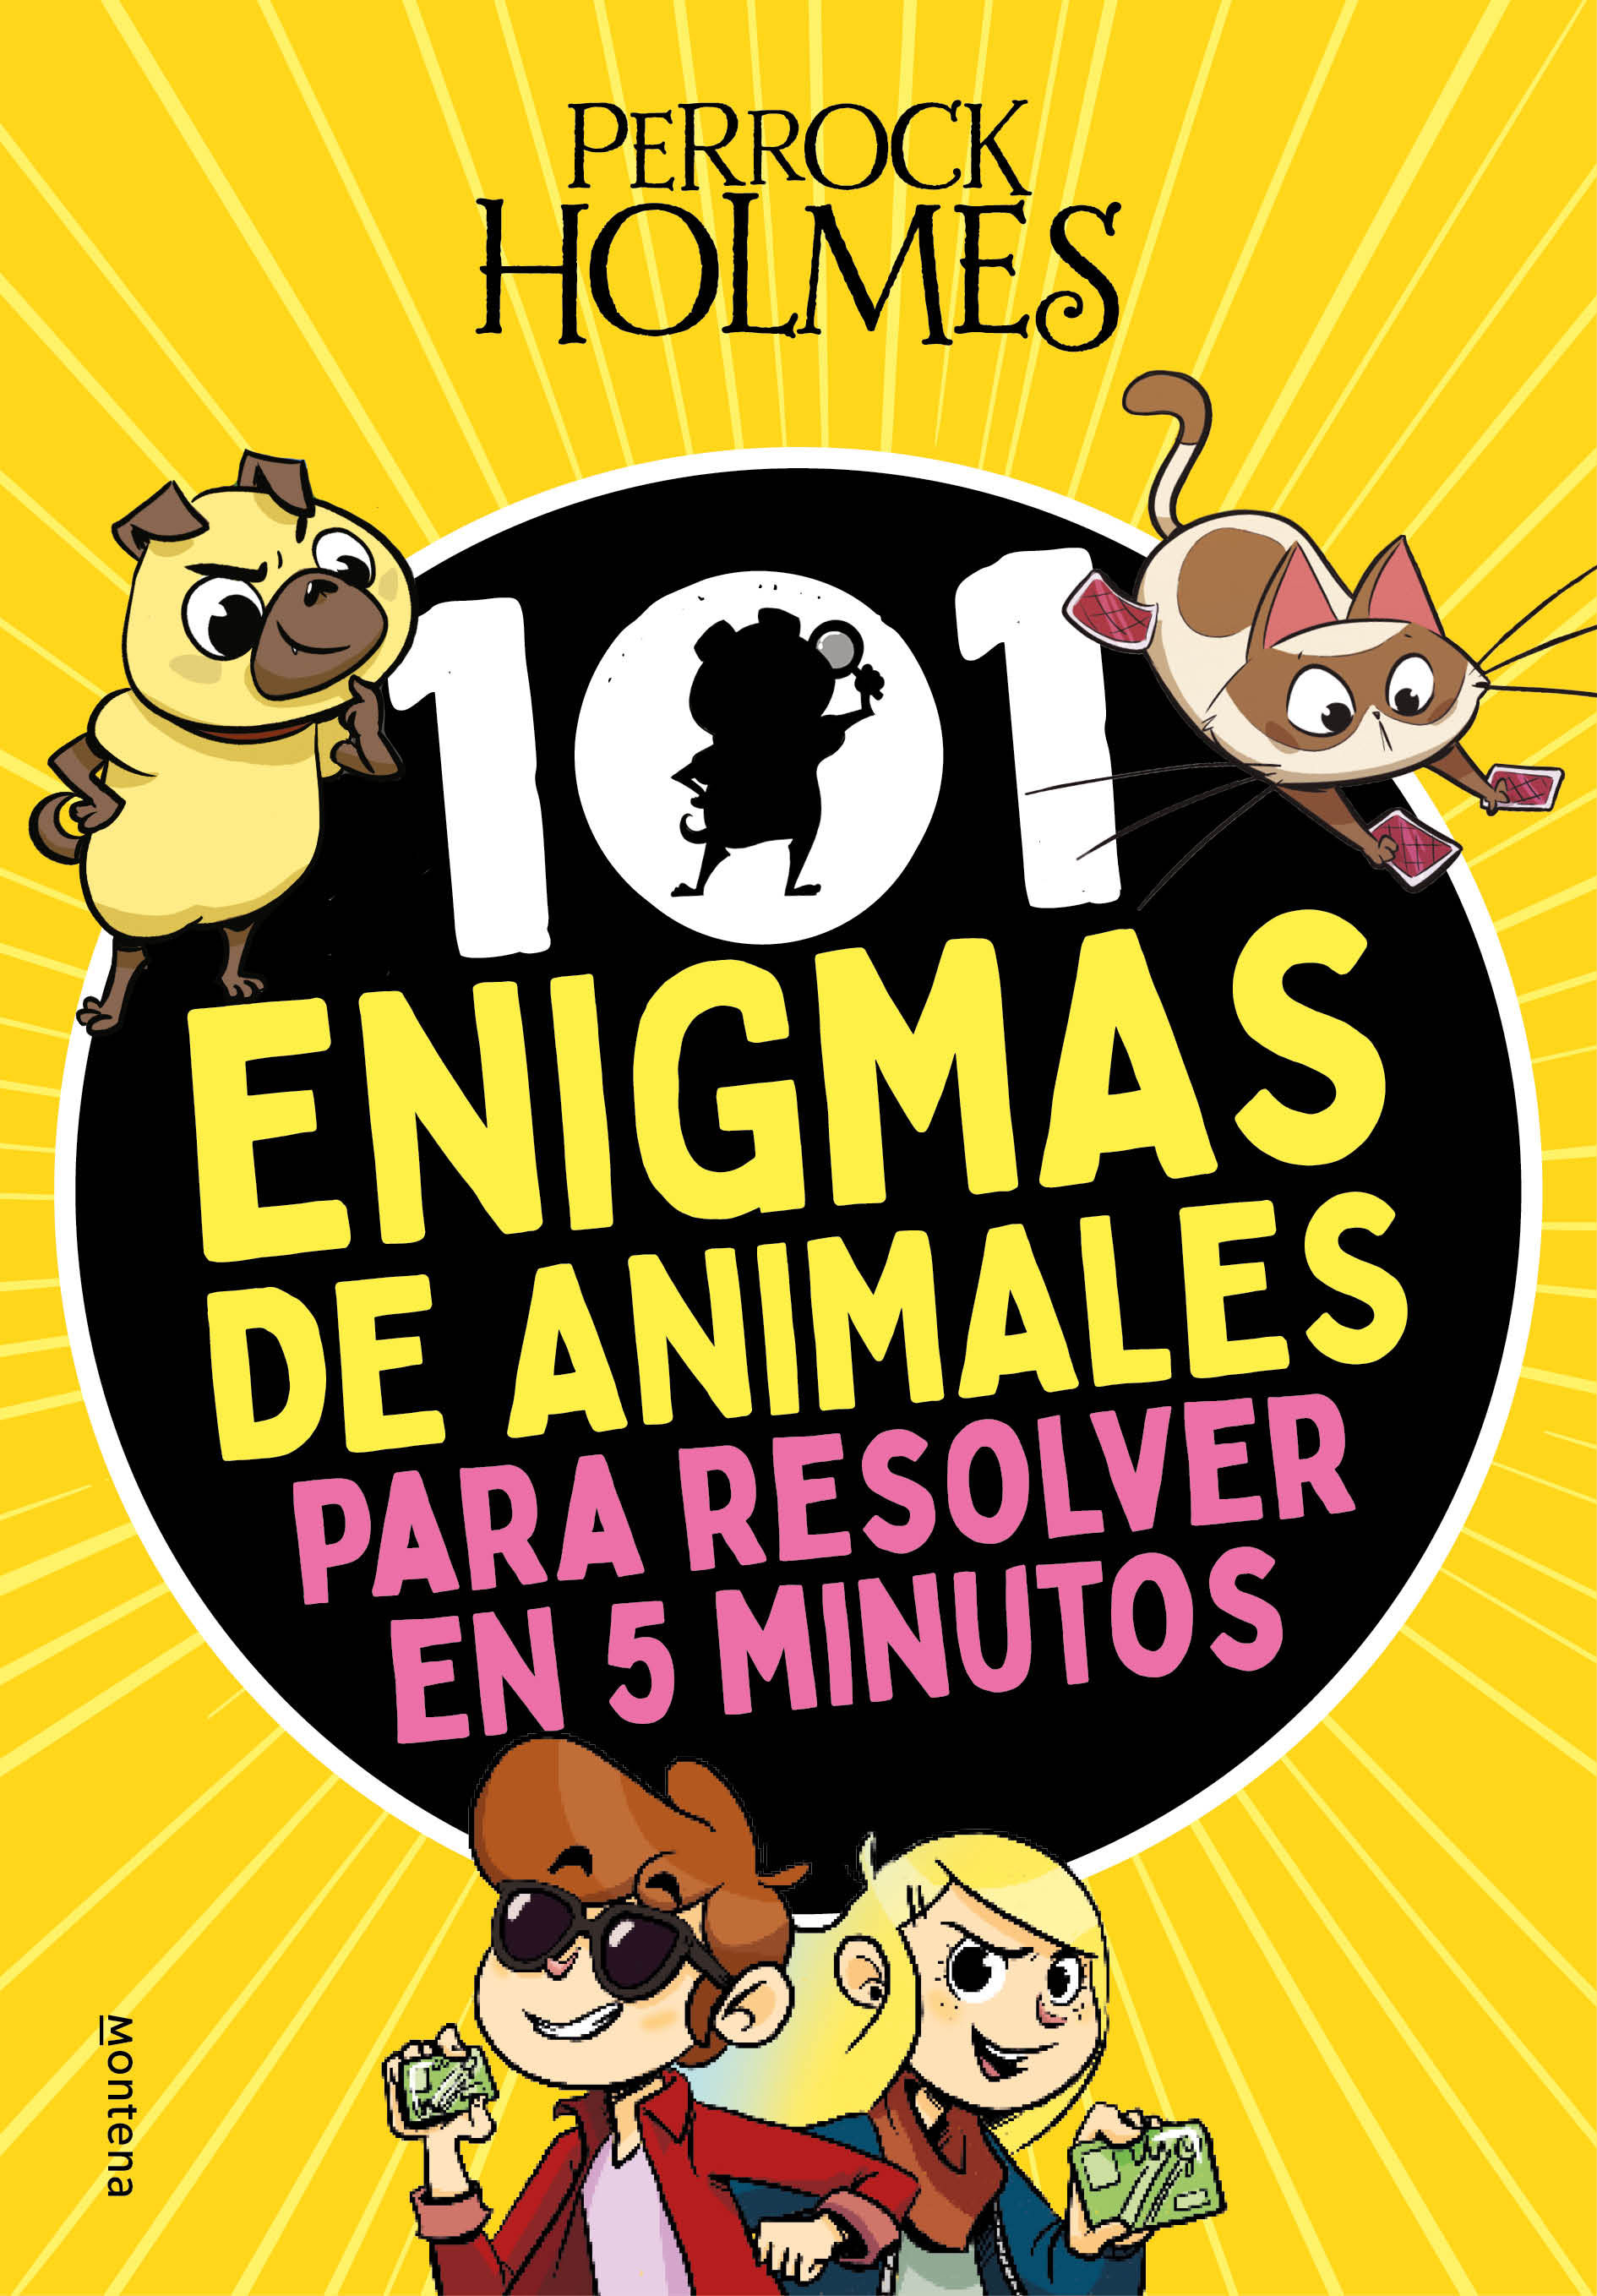 PERROCK HOLMES. 101 ENIGMAS DE ANIMALES